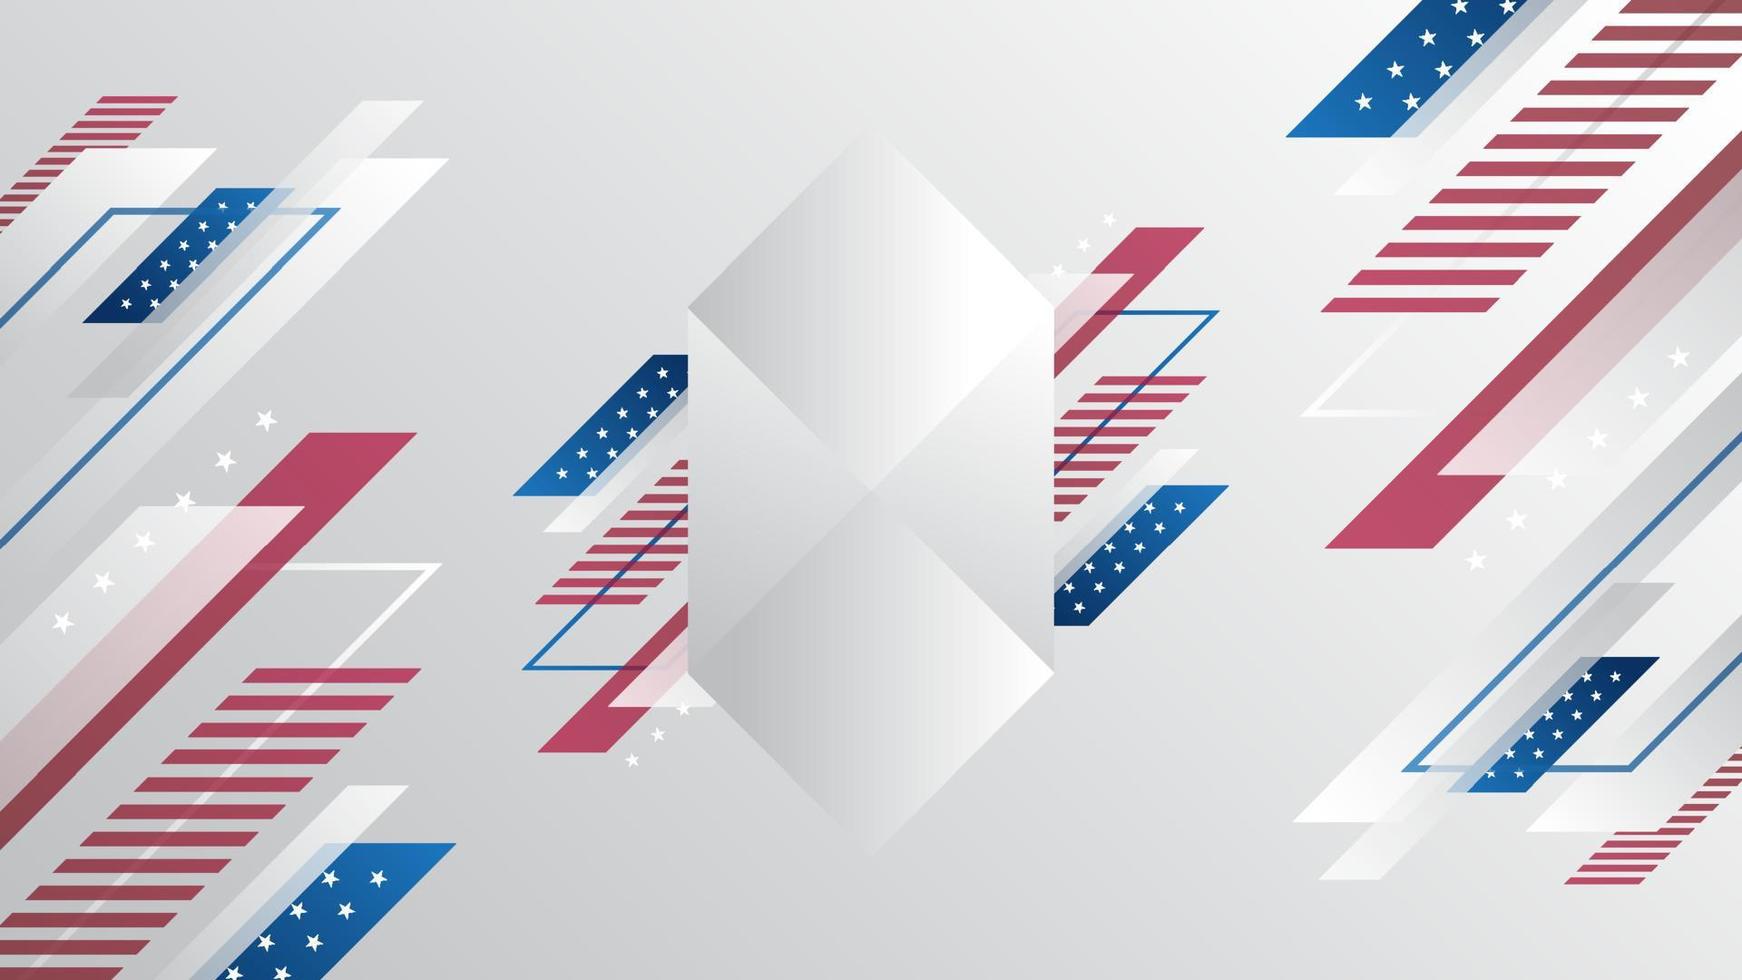 geometrisch achtergrondontwerp voor sjabloon voor onafhankelijkheidsdag in de VS vector